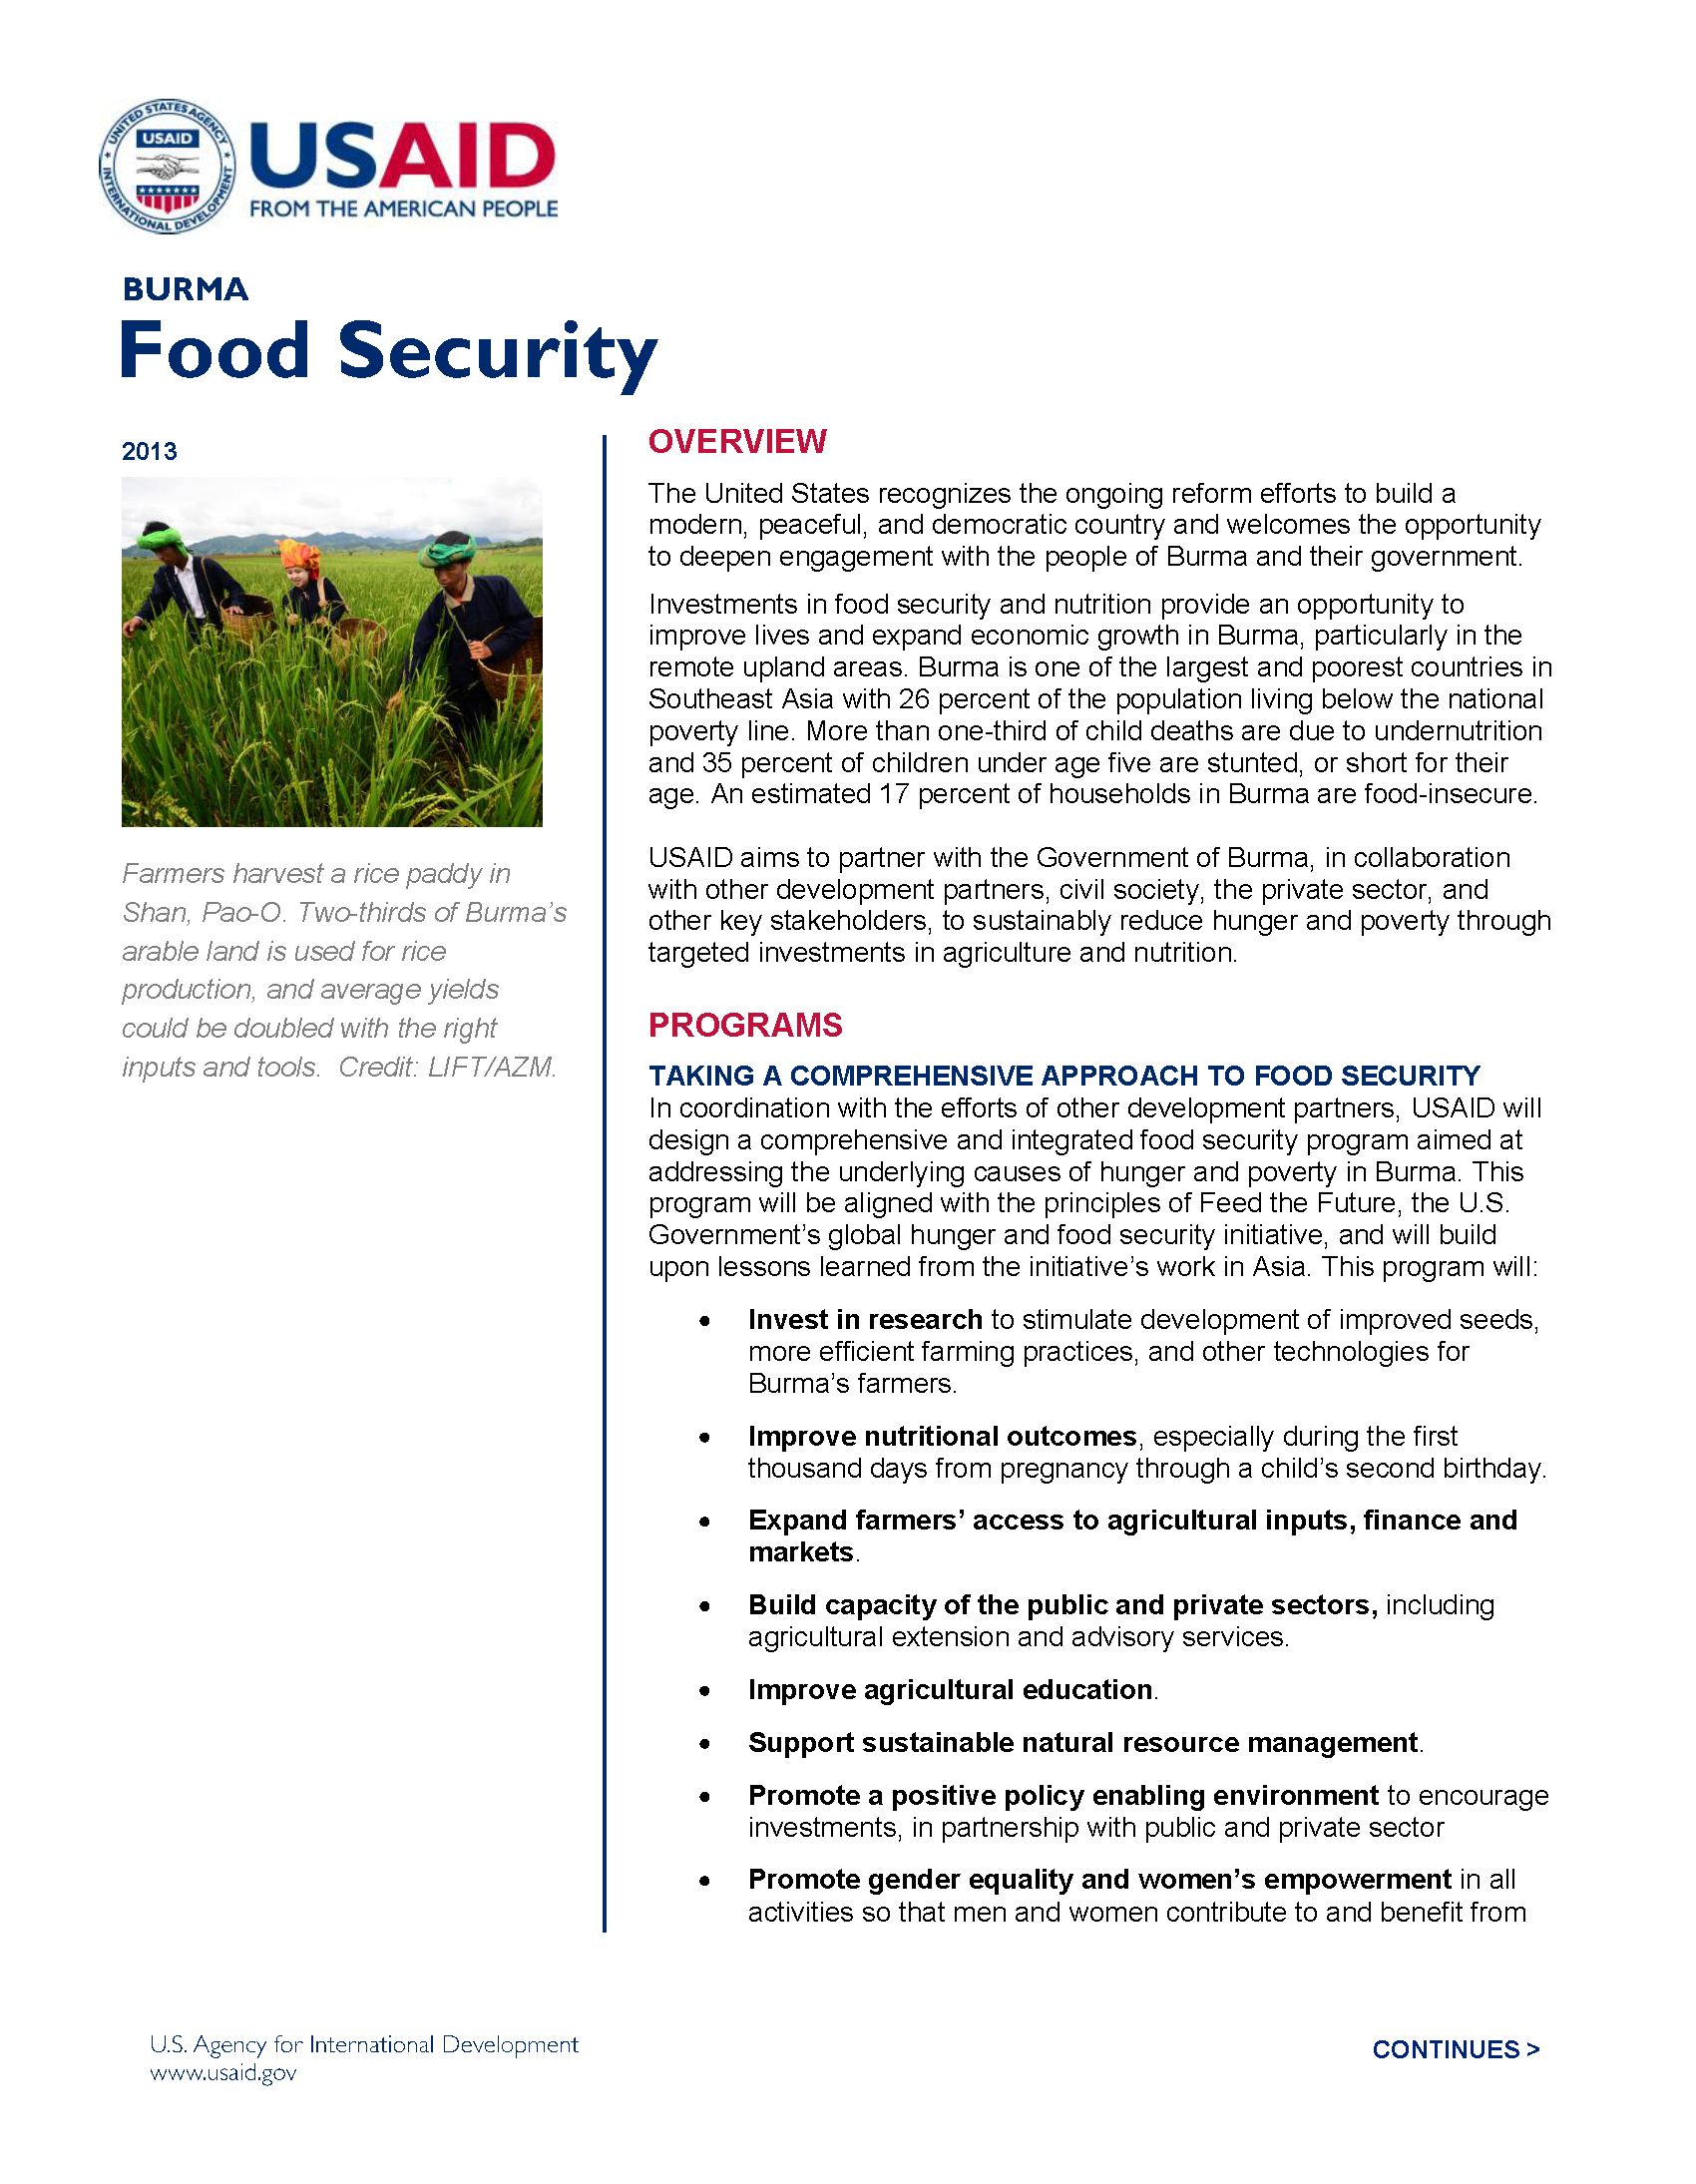 Burma Food Security Fact Sheet